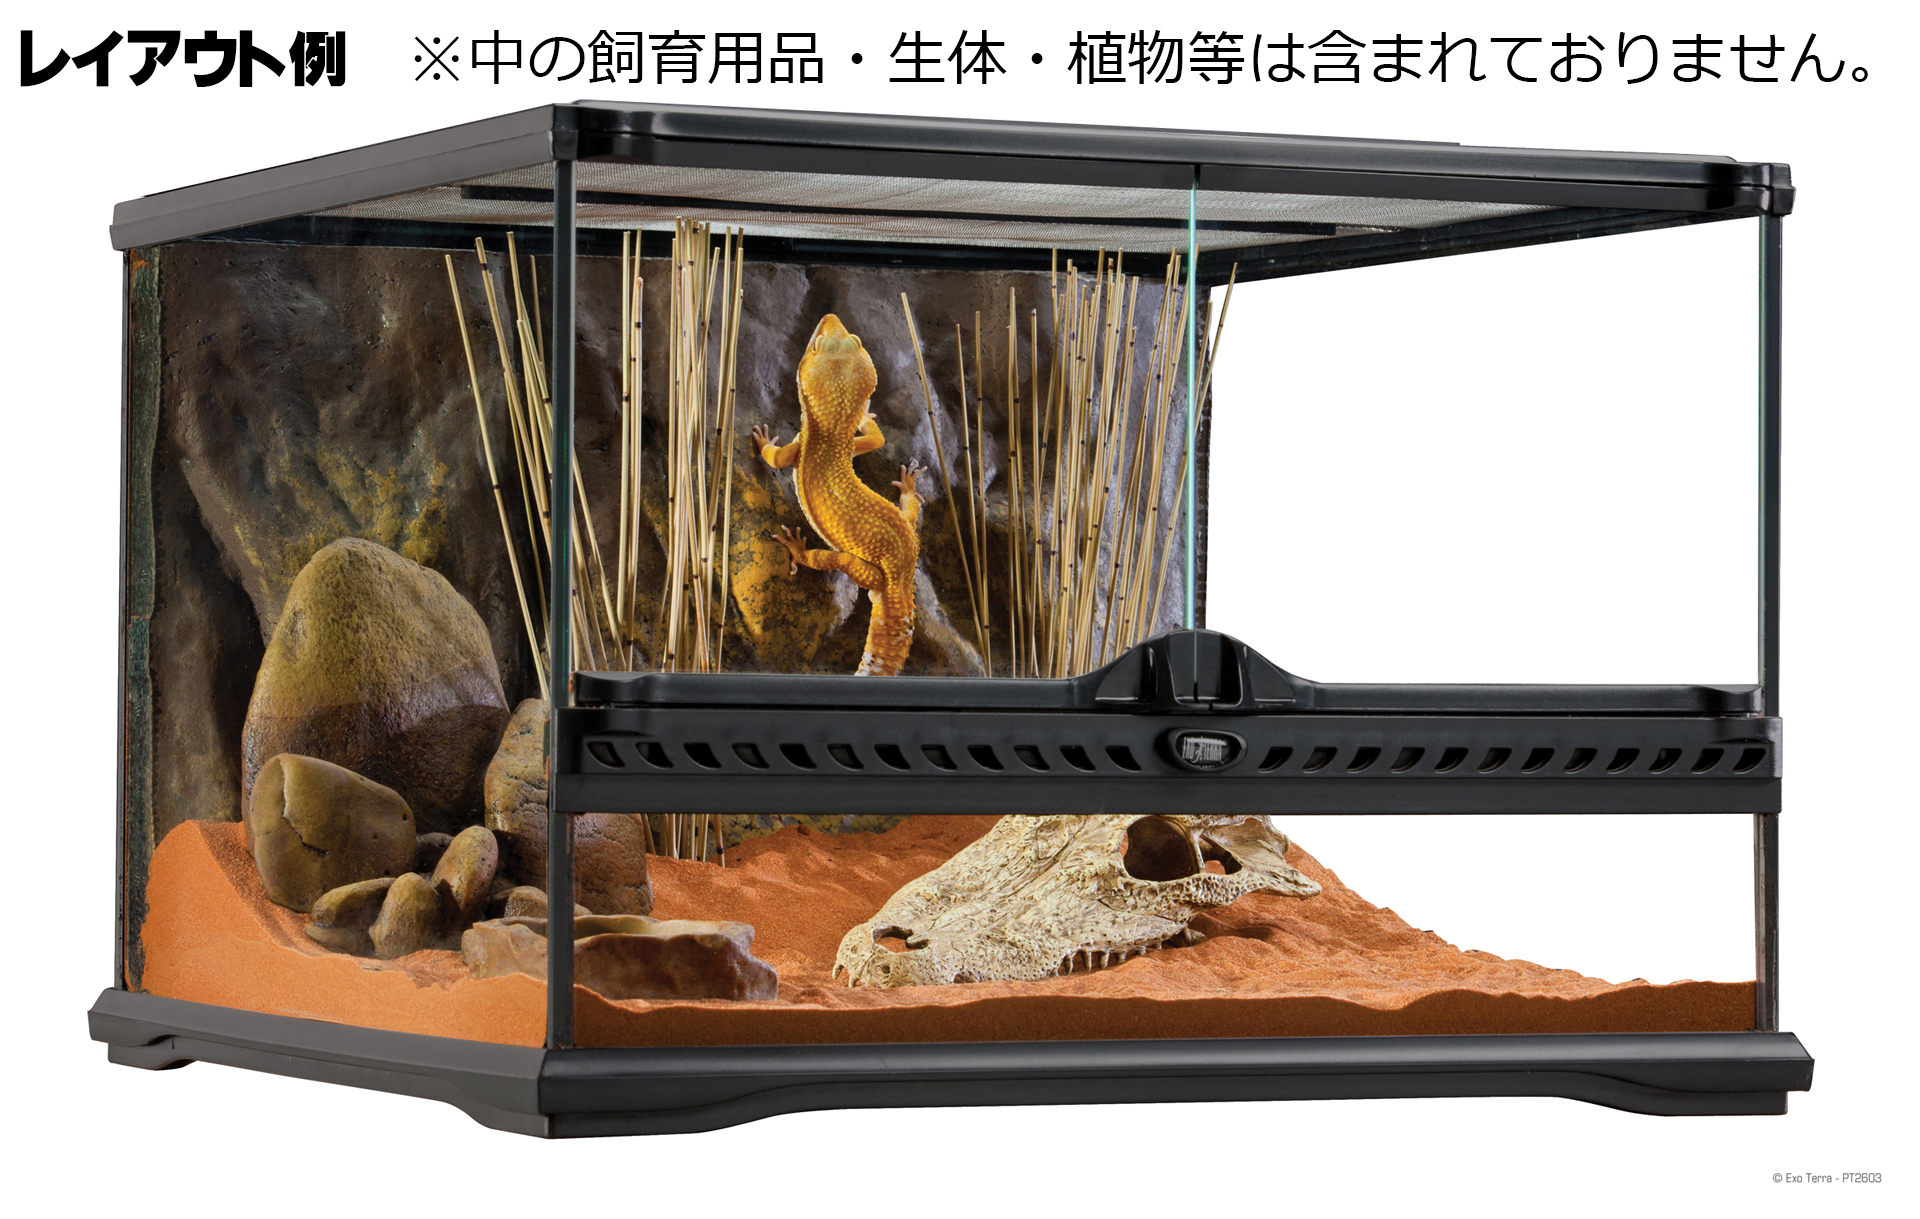 GEX グラステラリウム6030飼育セット - 爬虫類/両生類用品